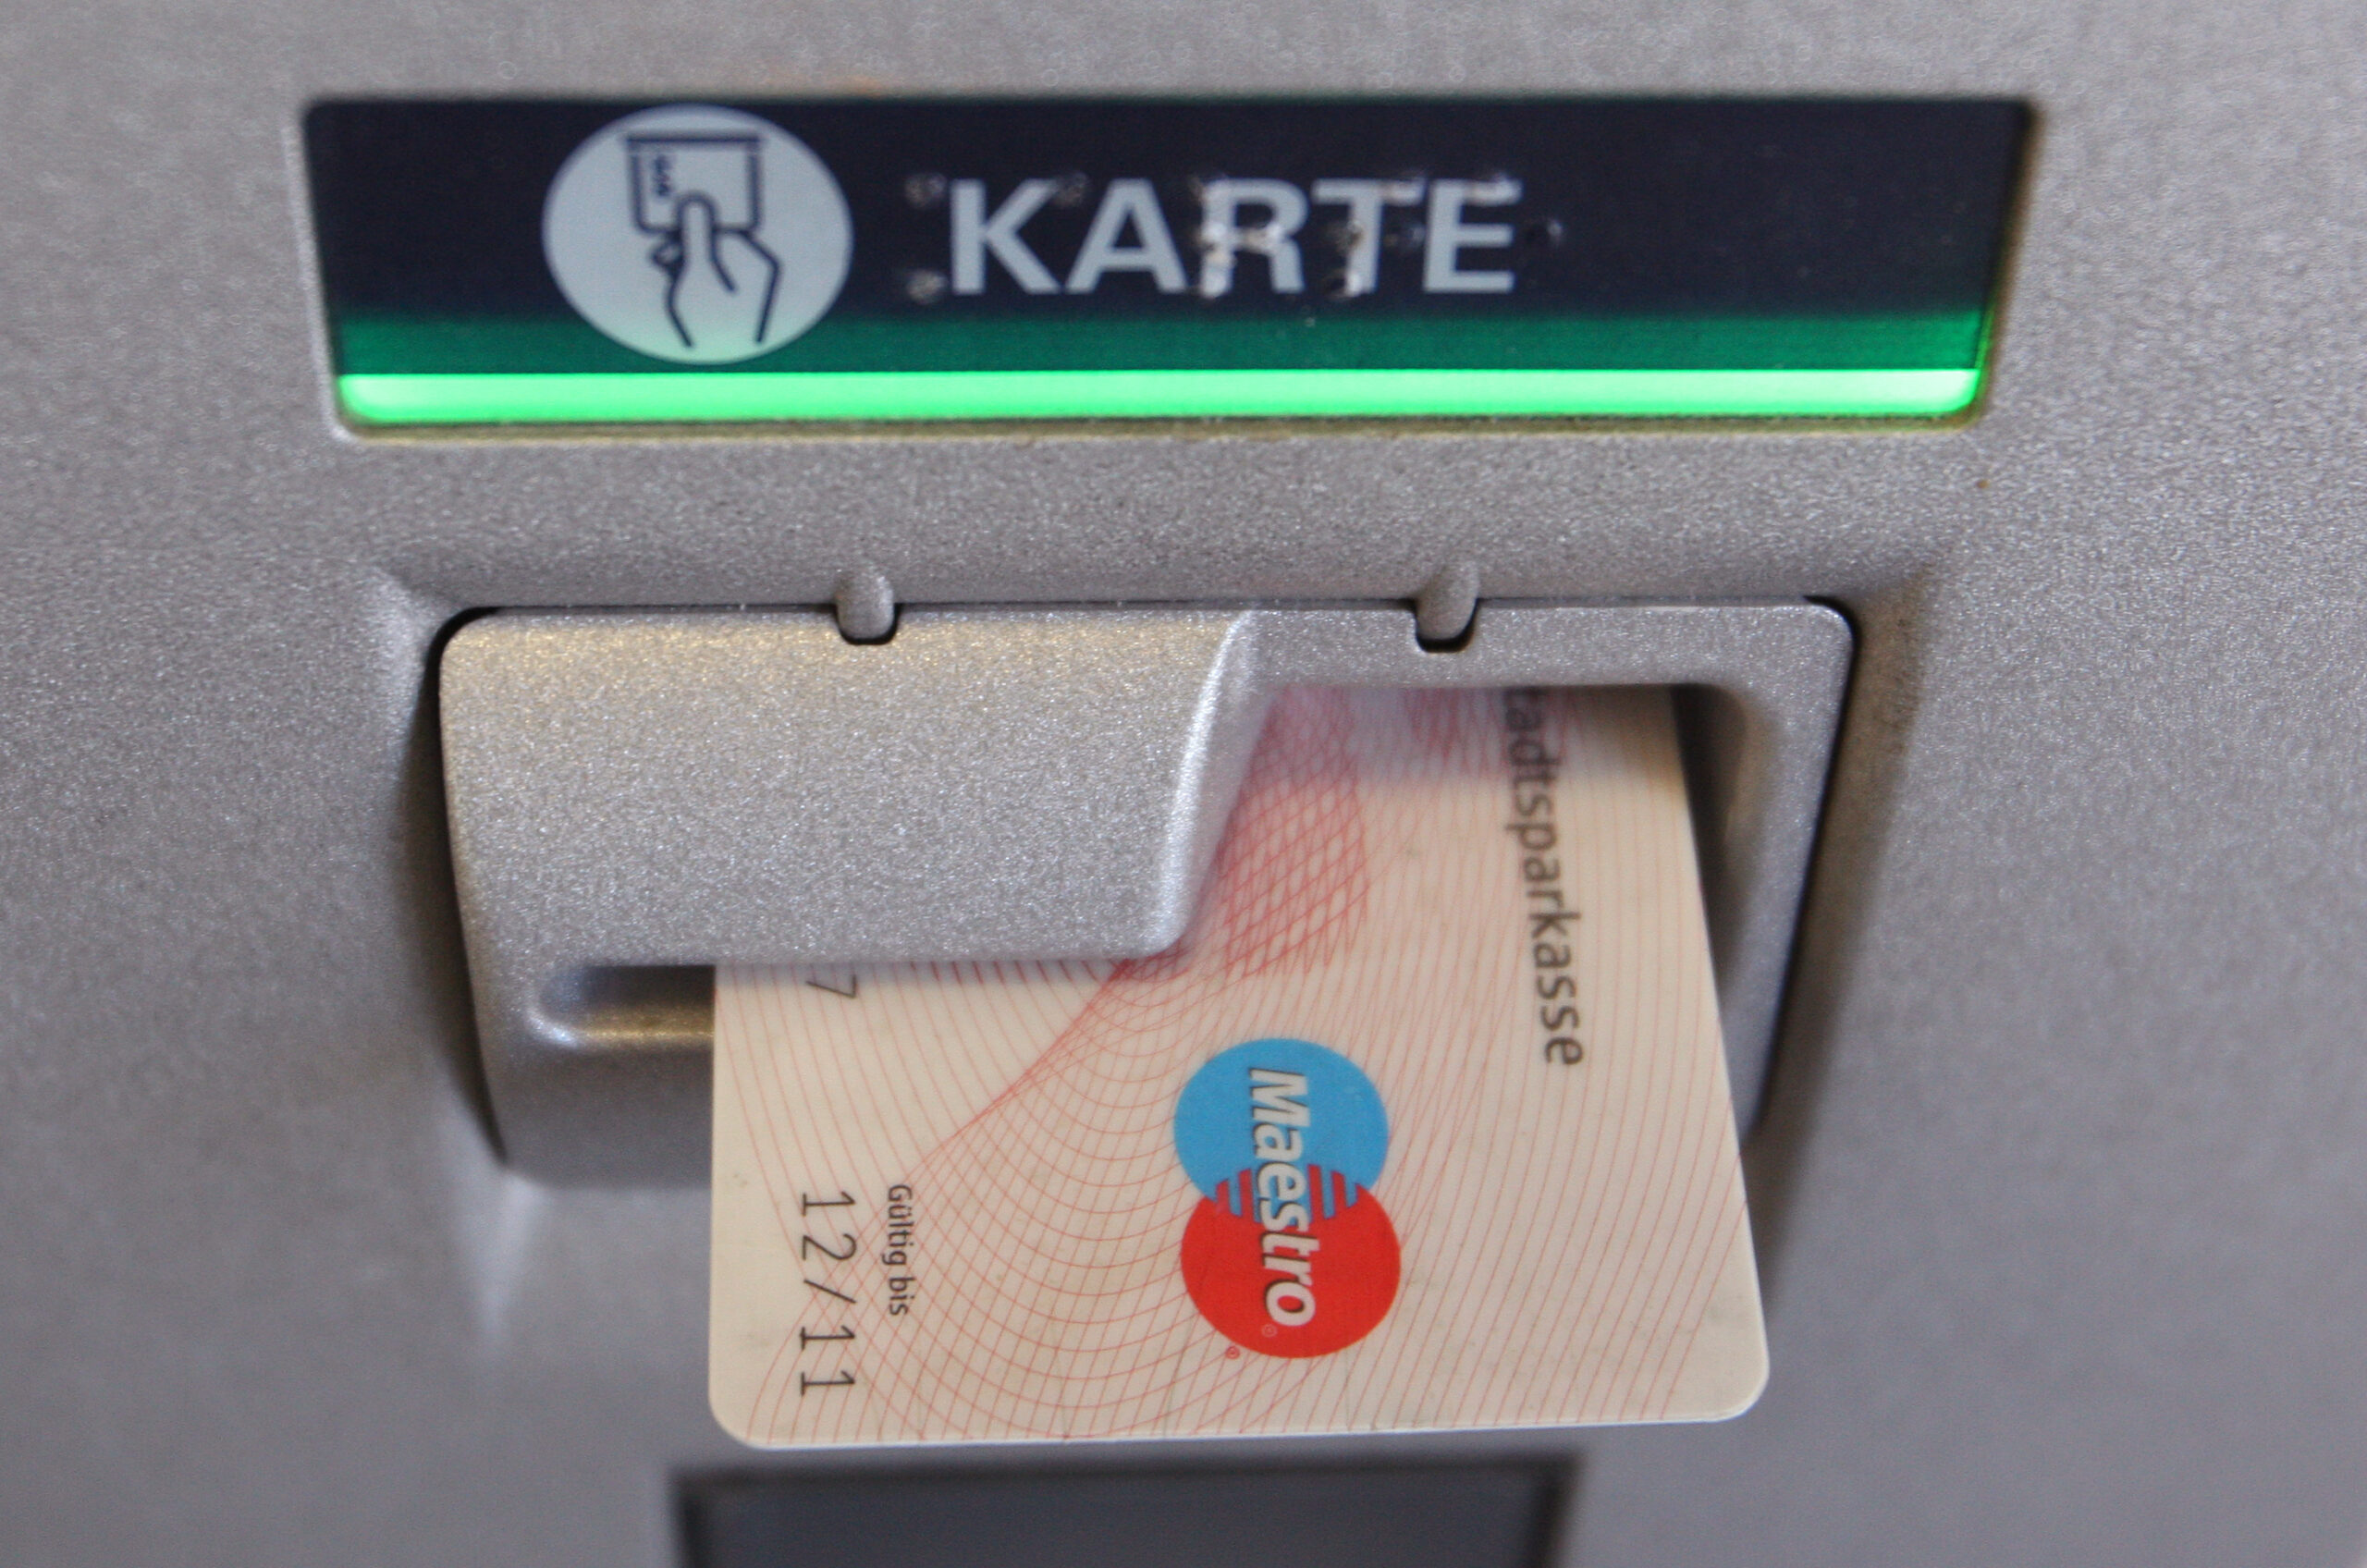 Hamburg: Hati-hati saat menarik uang – data kartu berisiko!